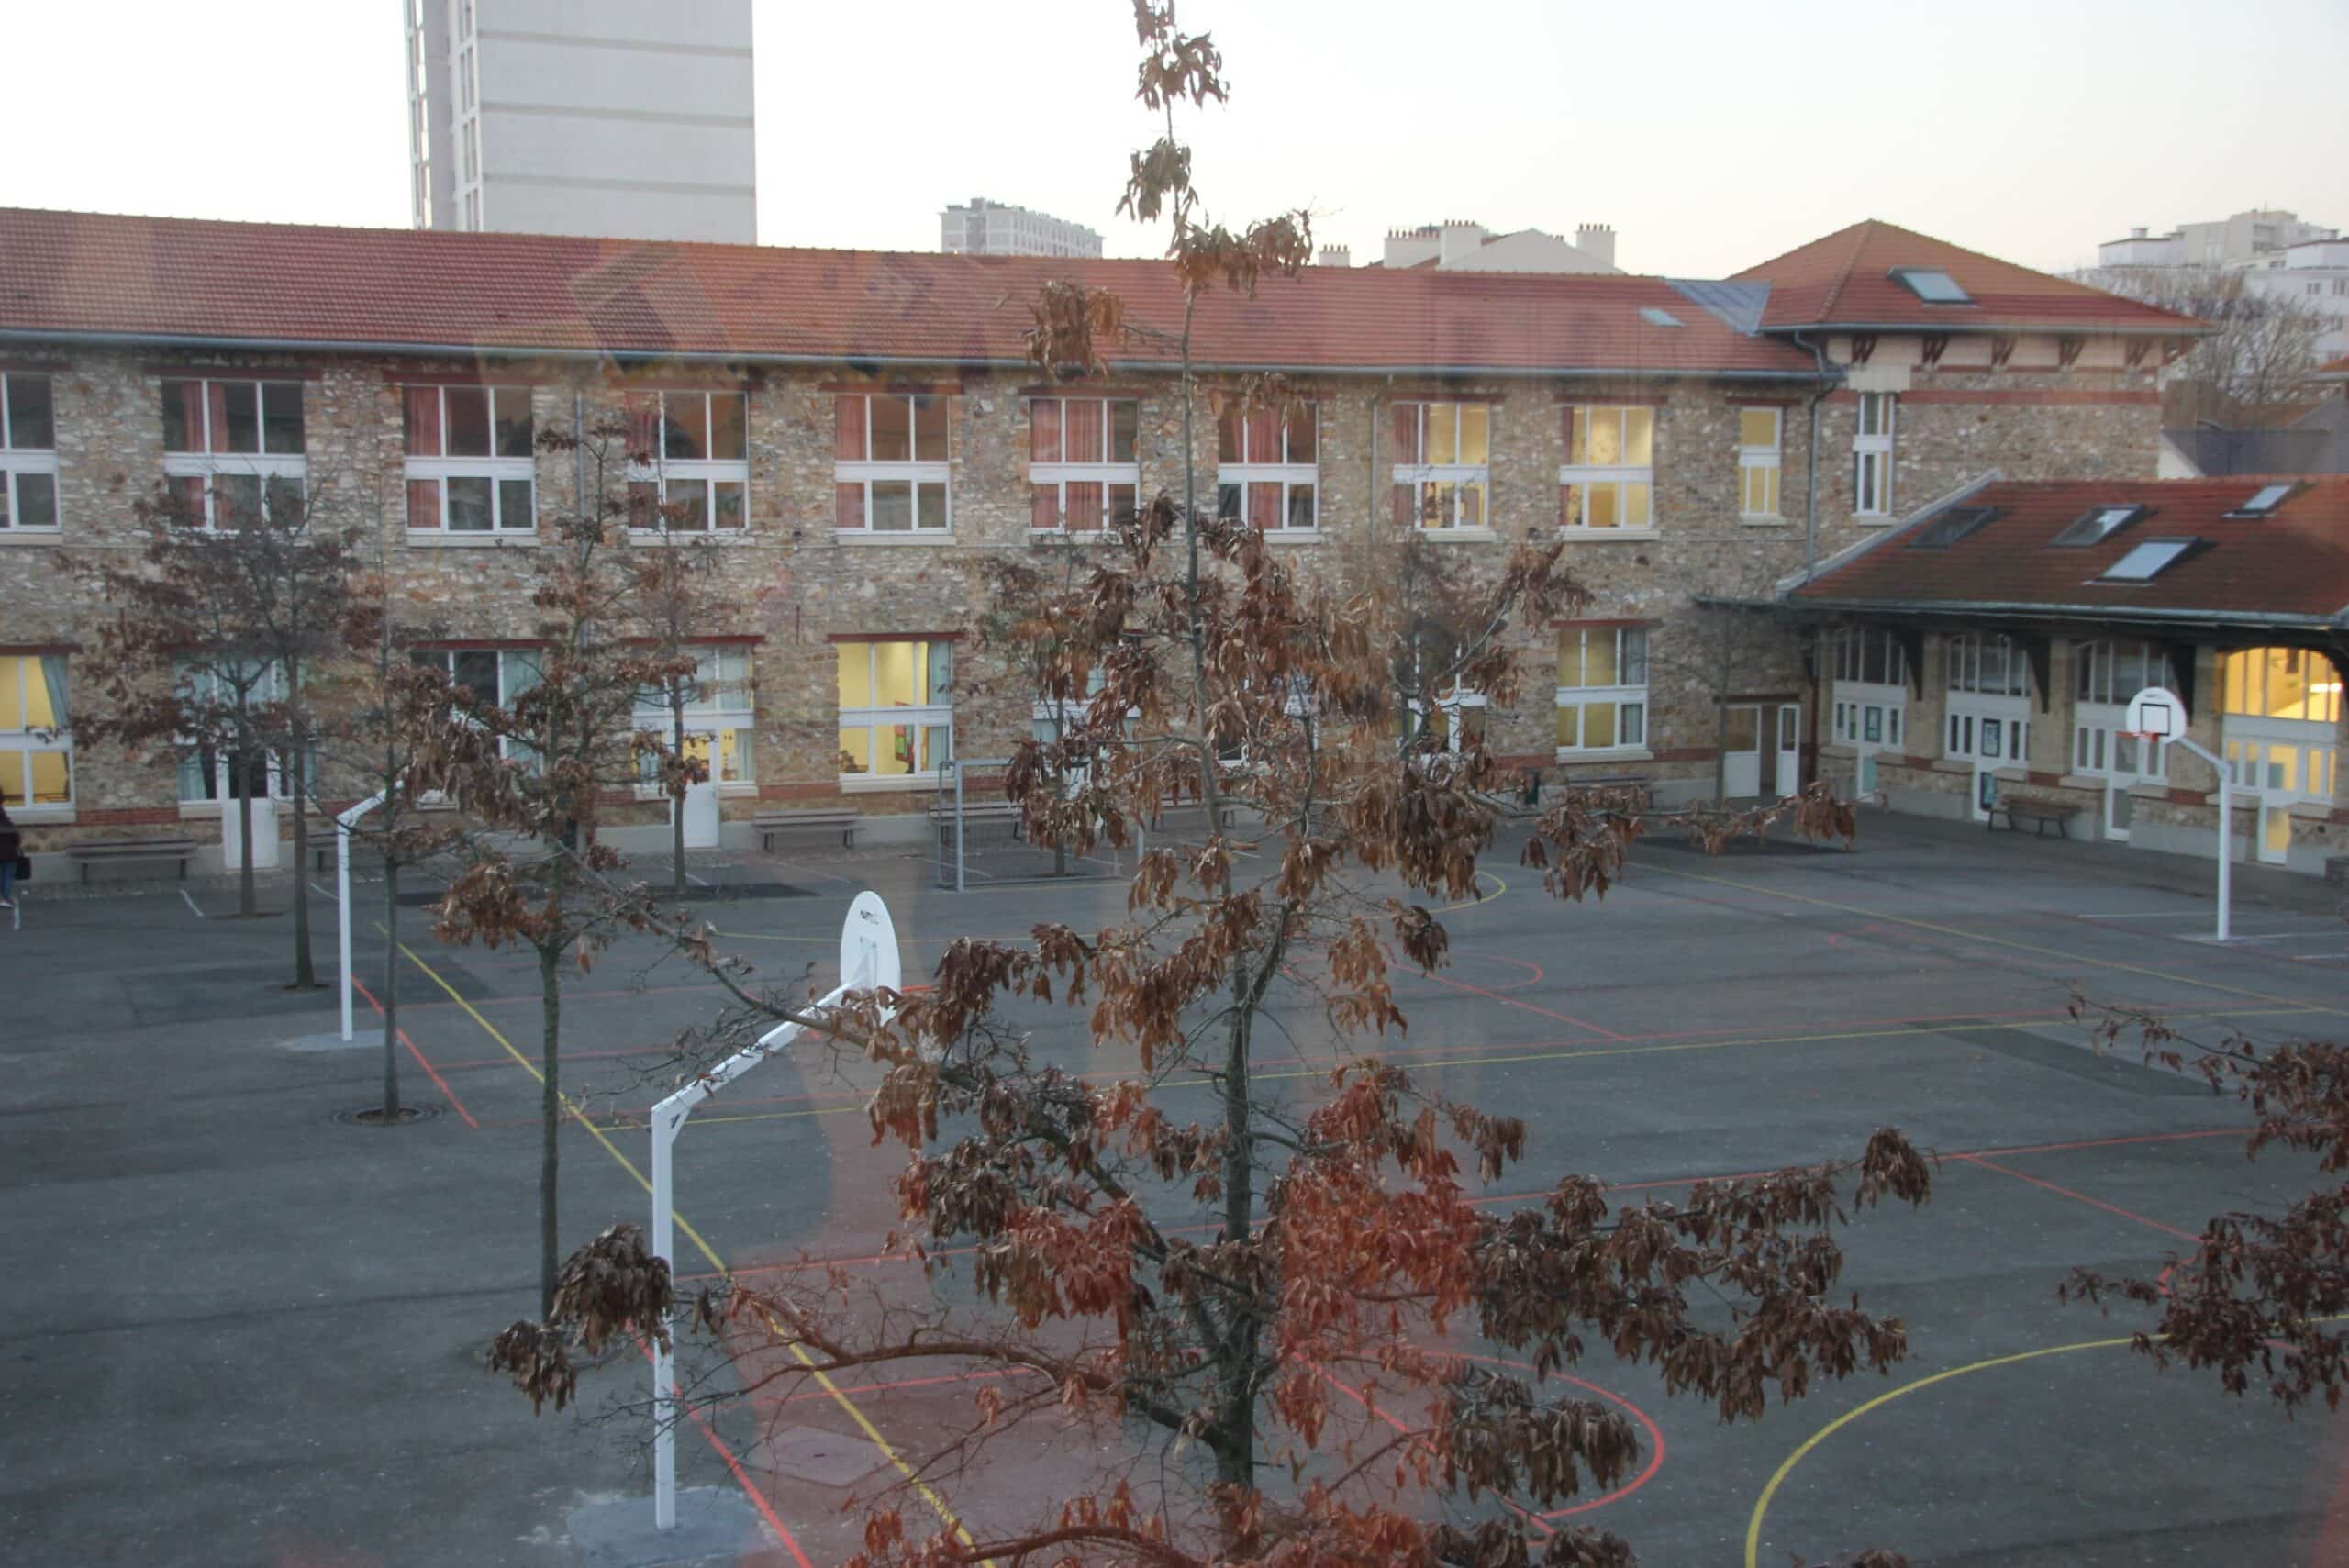 Une image contenant bâtiment, plein air, ciel, arbre Description générée automatiquement